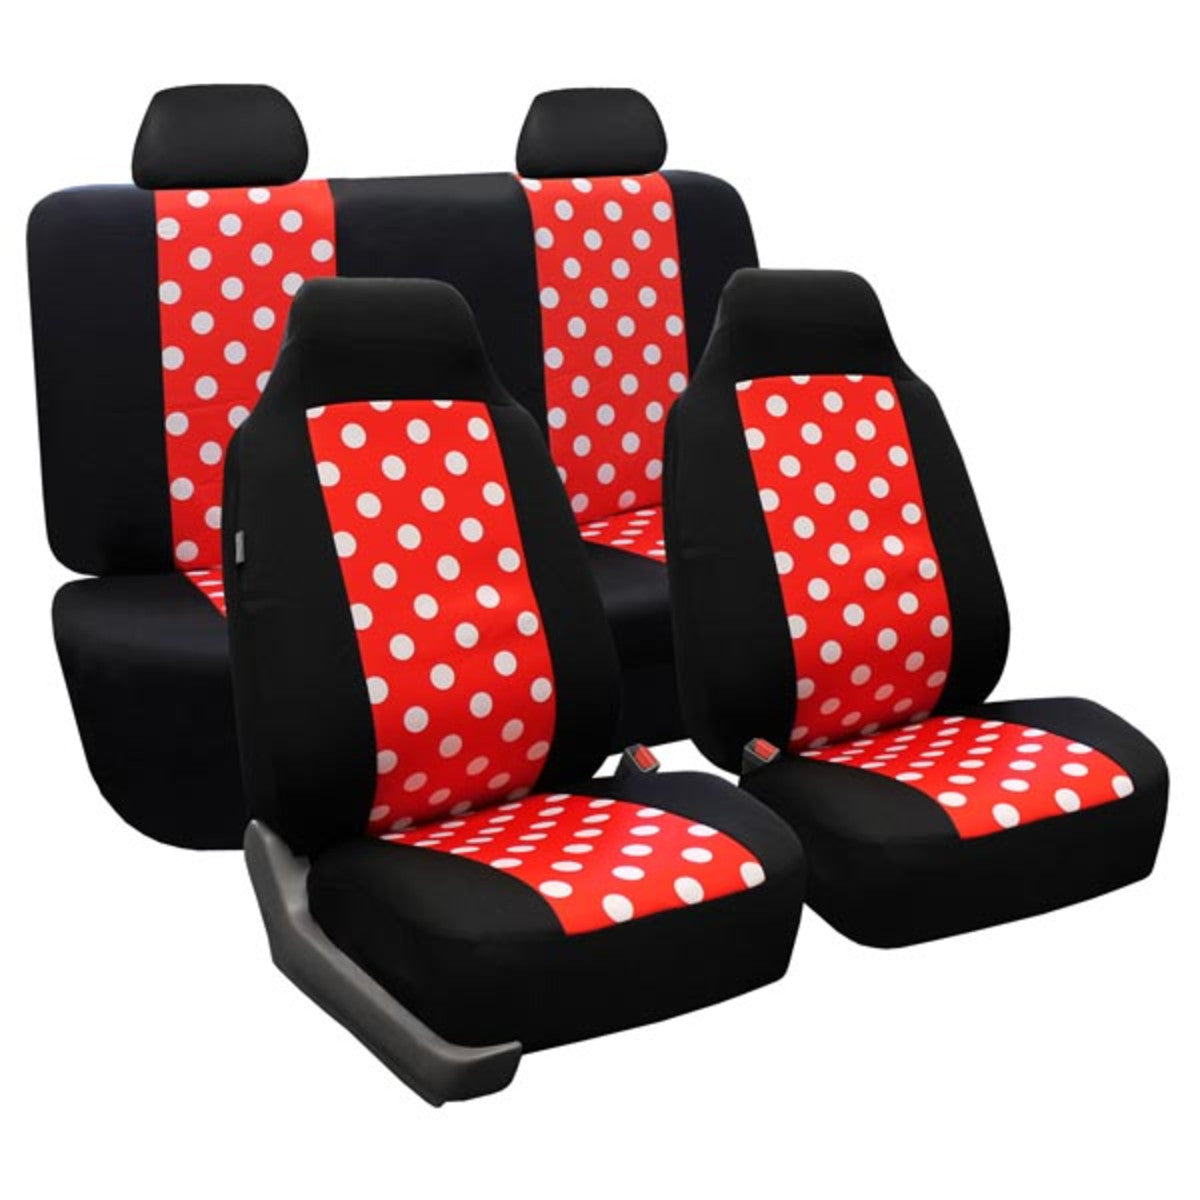 Polka Dot Seat Covers - Full Set 2 Tone Polka Dots